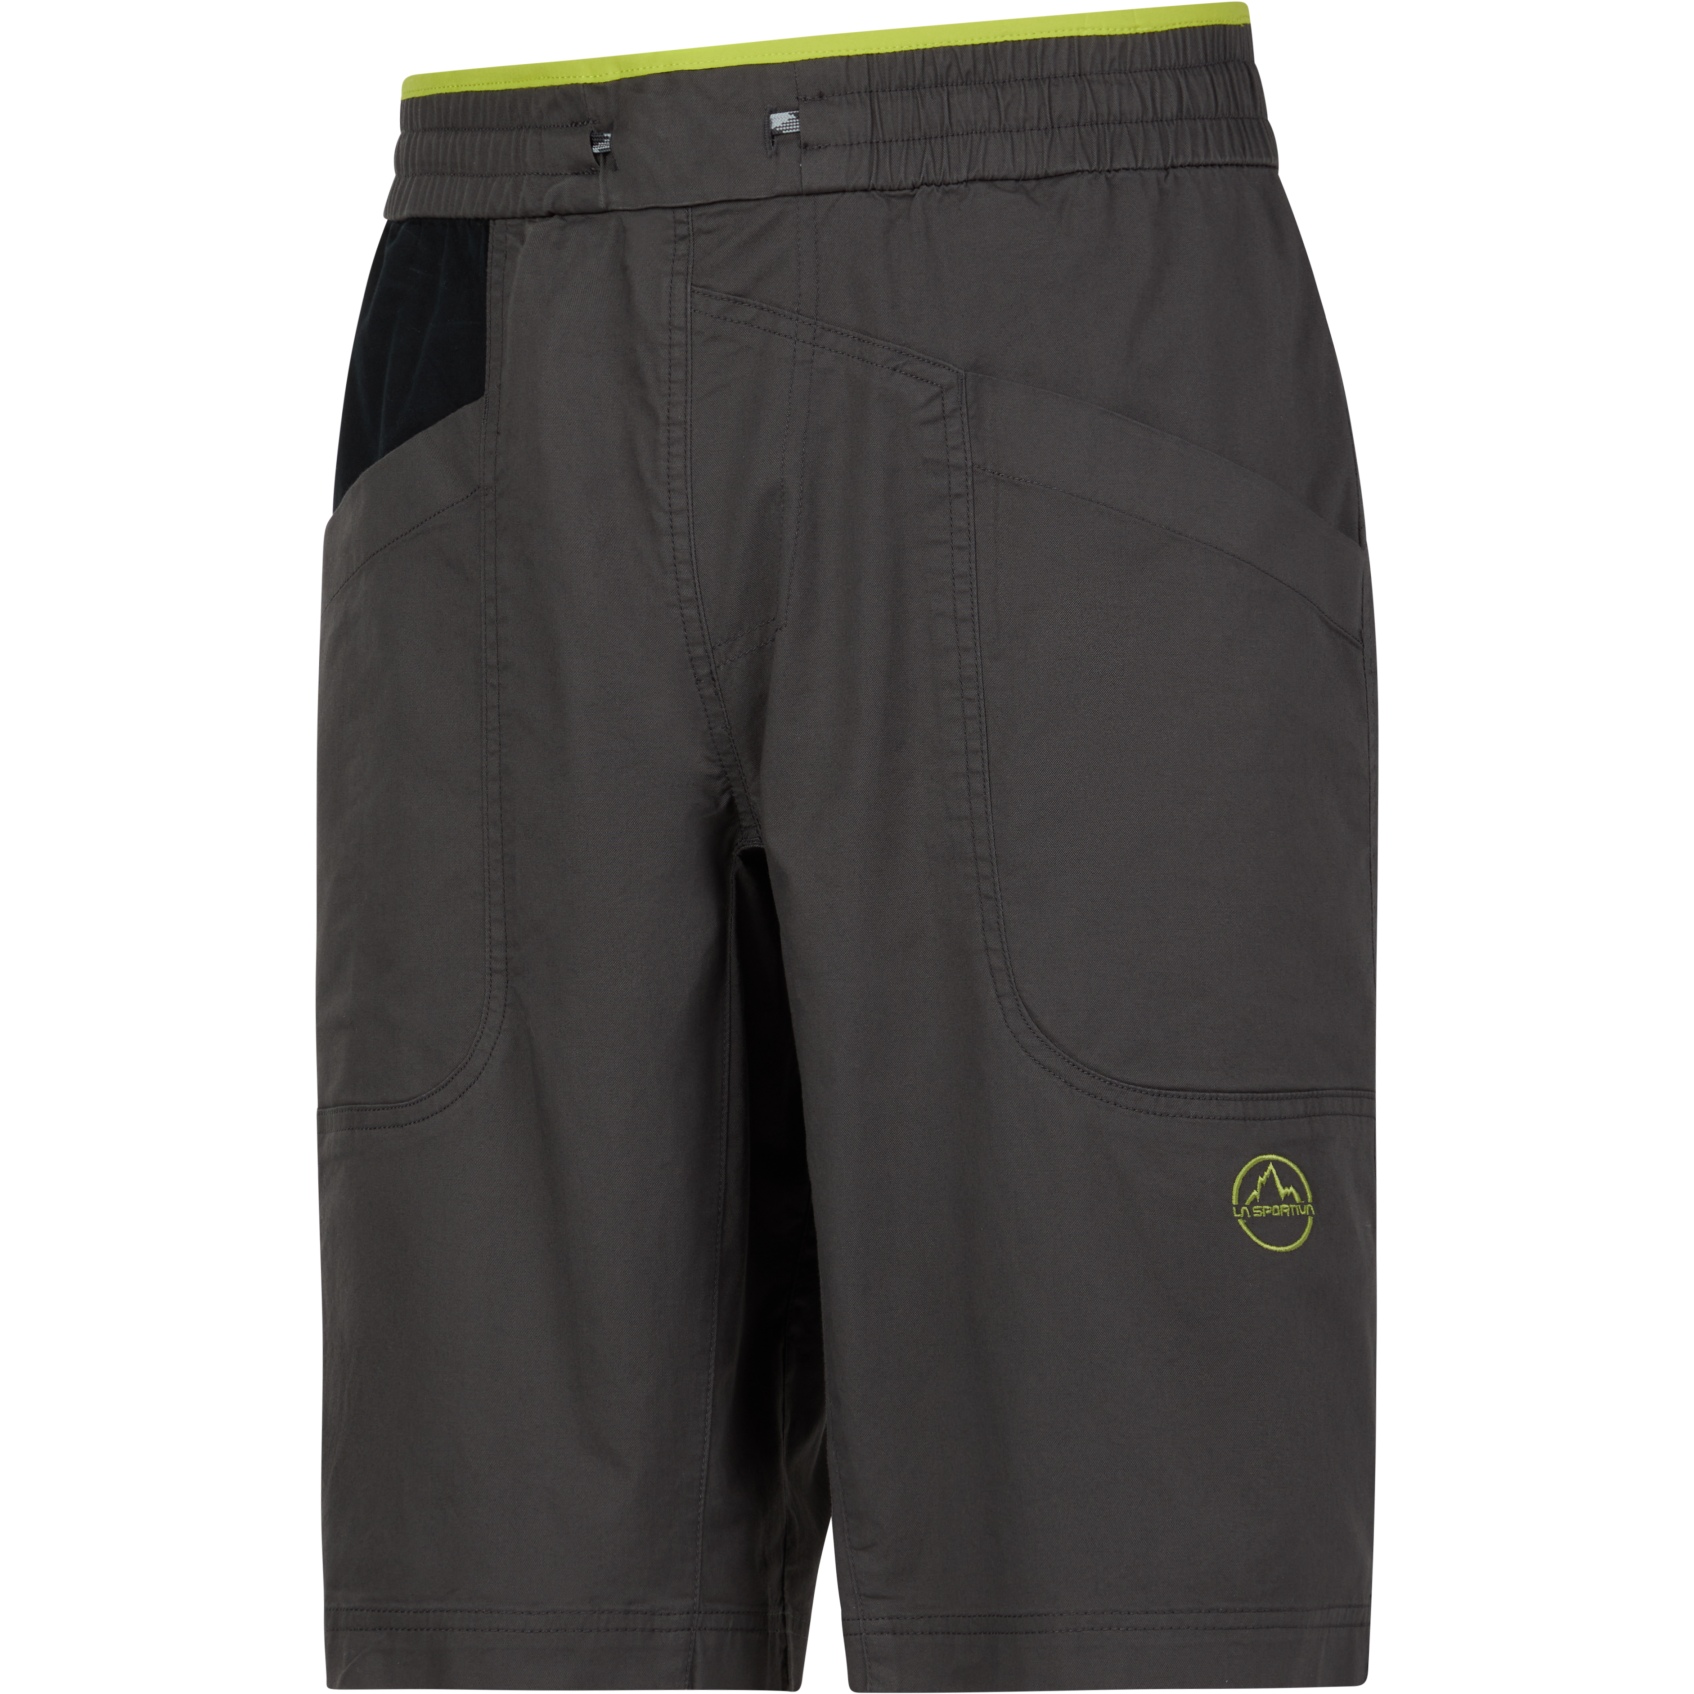 Produktbild von La Sportiva Bleauser Shorts Herren - Carbon/Lime Punch